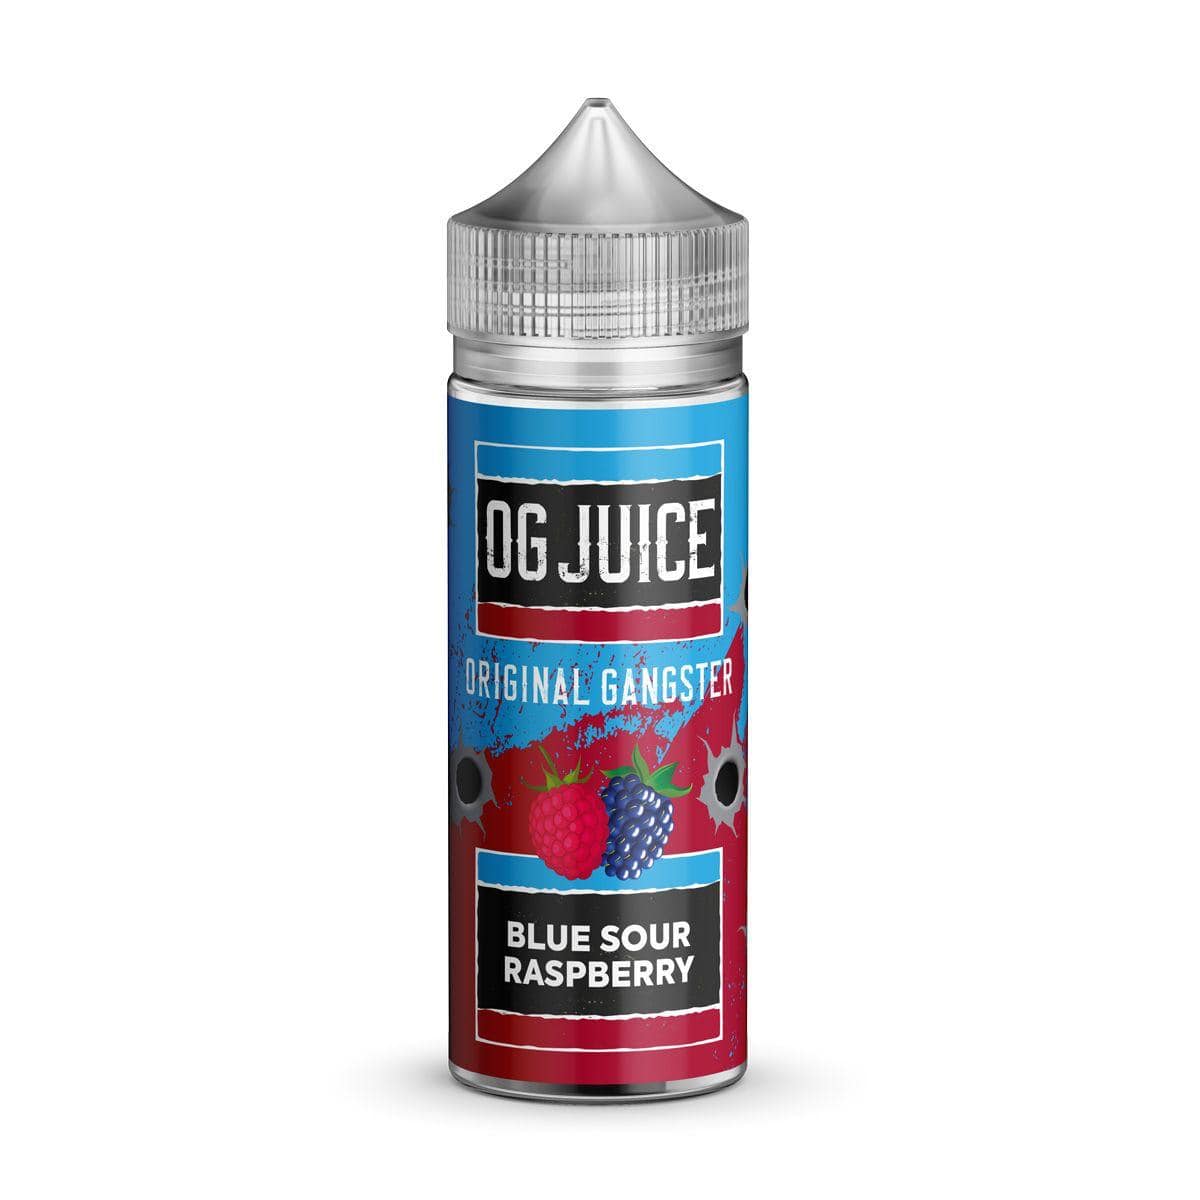 OG Juice Original Gangster - Blue Sour Raspberry - 100ml E-liquid Shortfill - Mcr Vape Distro